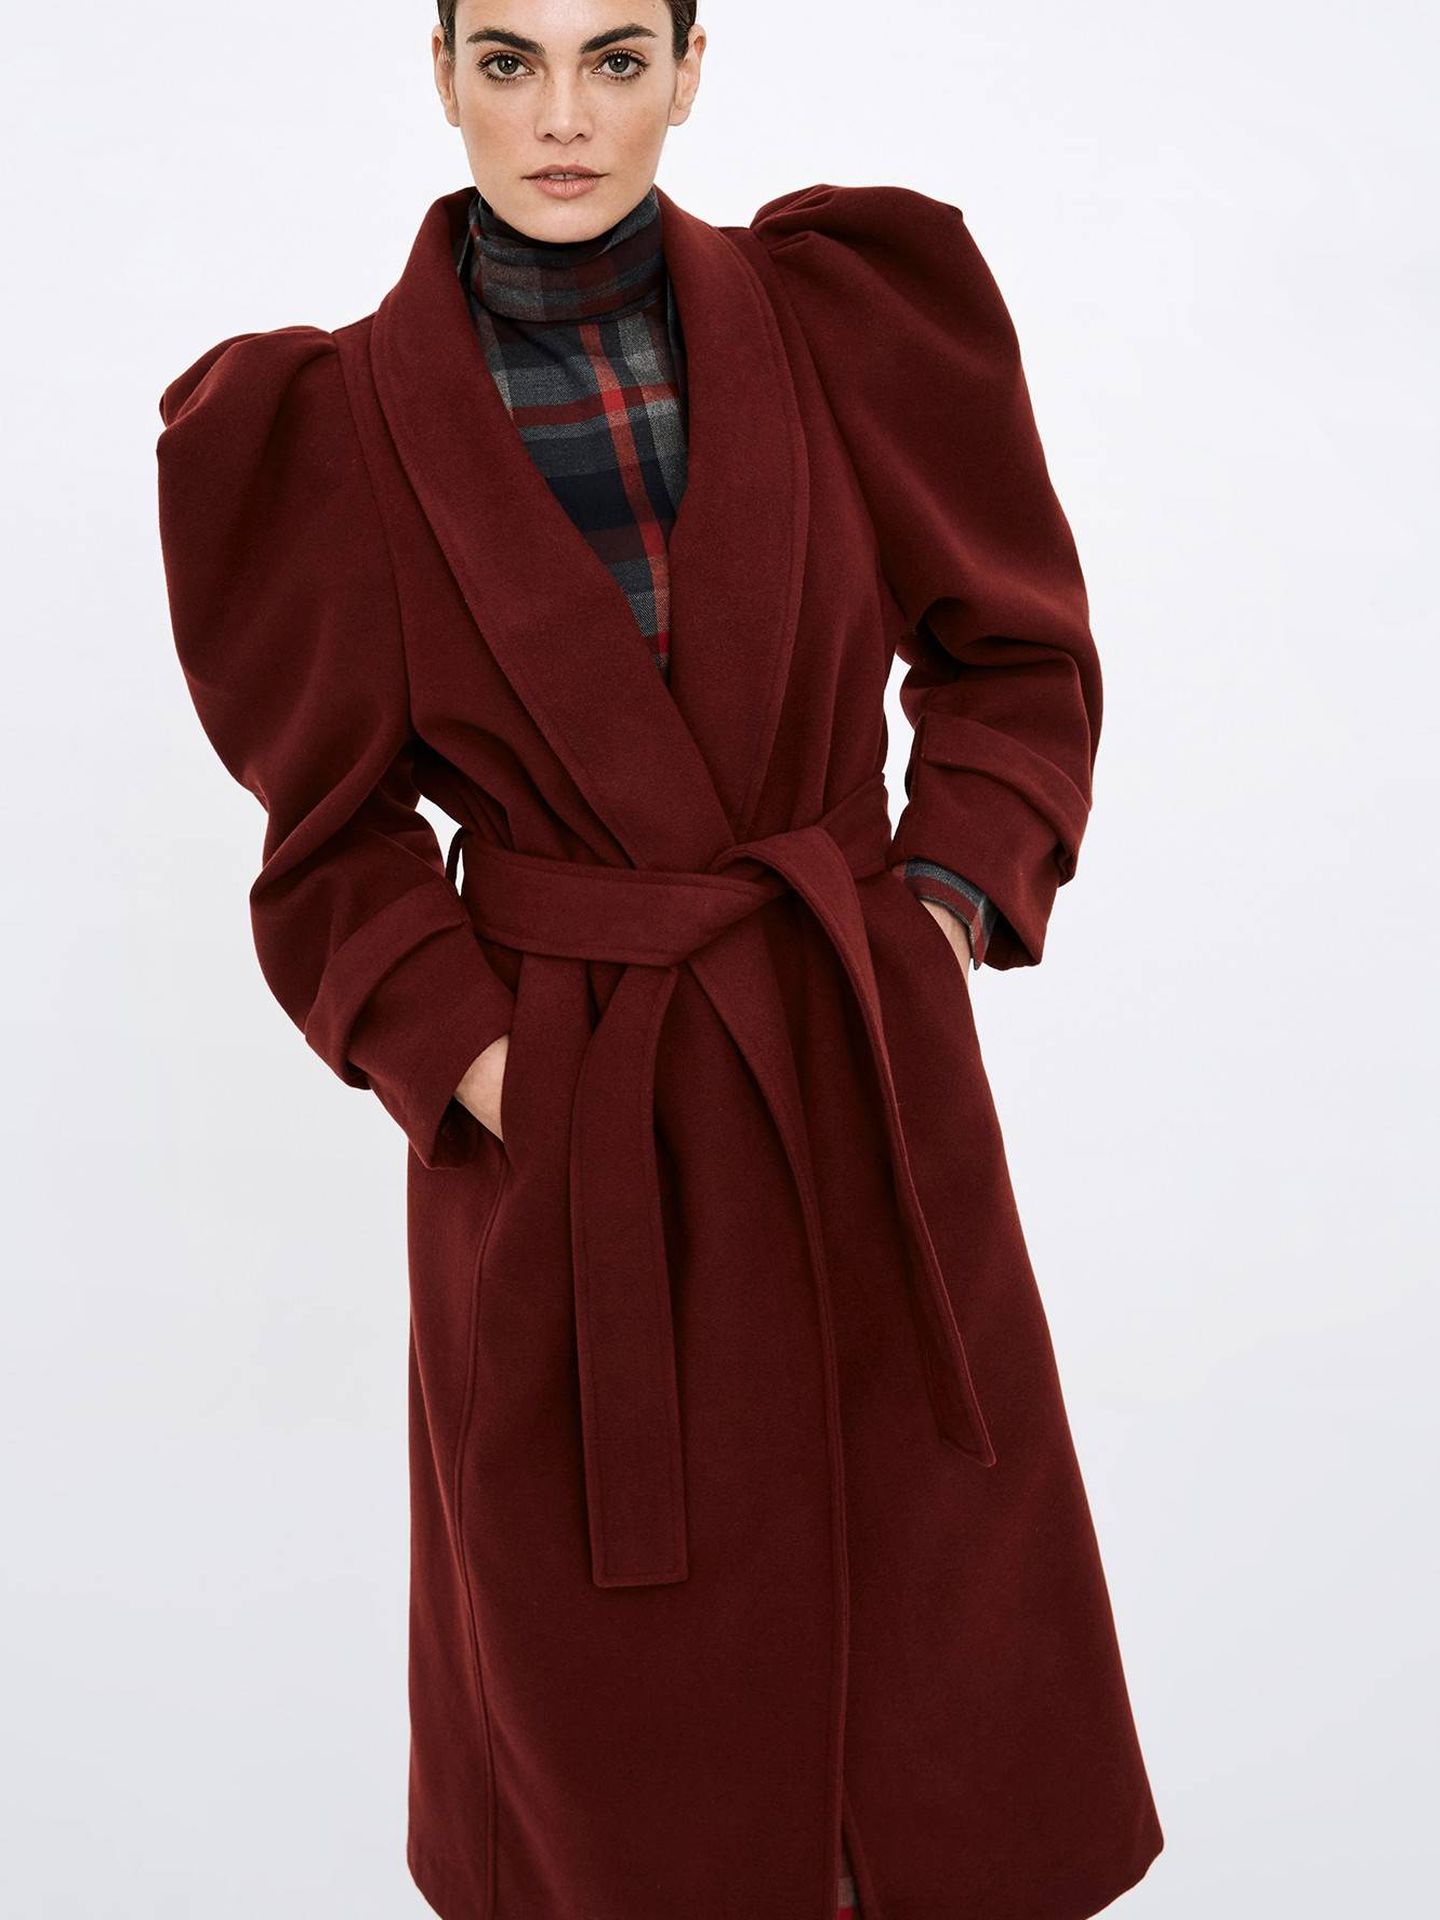 El abrigo que tiene Eugenia en su vestidor. (Cortesía)